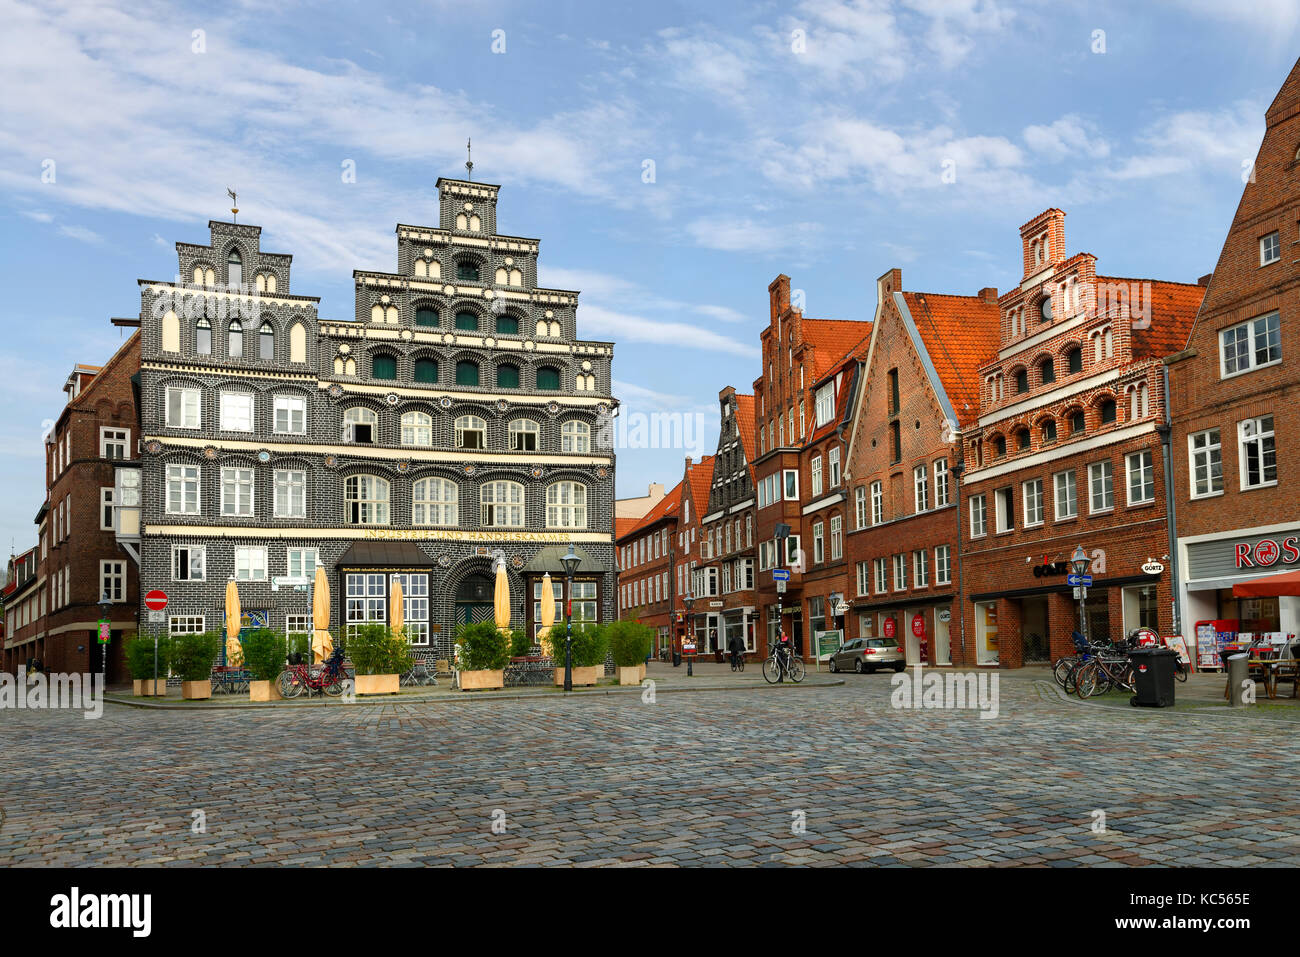 AM Sande, place de ville avec chambre de commerce et d'industrie, bâtiments historiques, vieille ville, Lüneburg, Basse-Saxe, Allemagne Banque D'Images